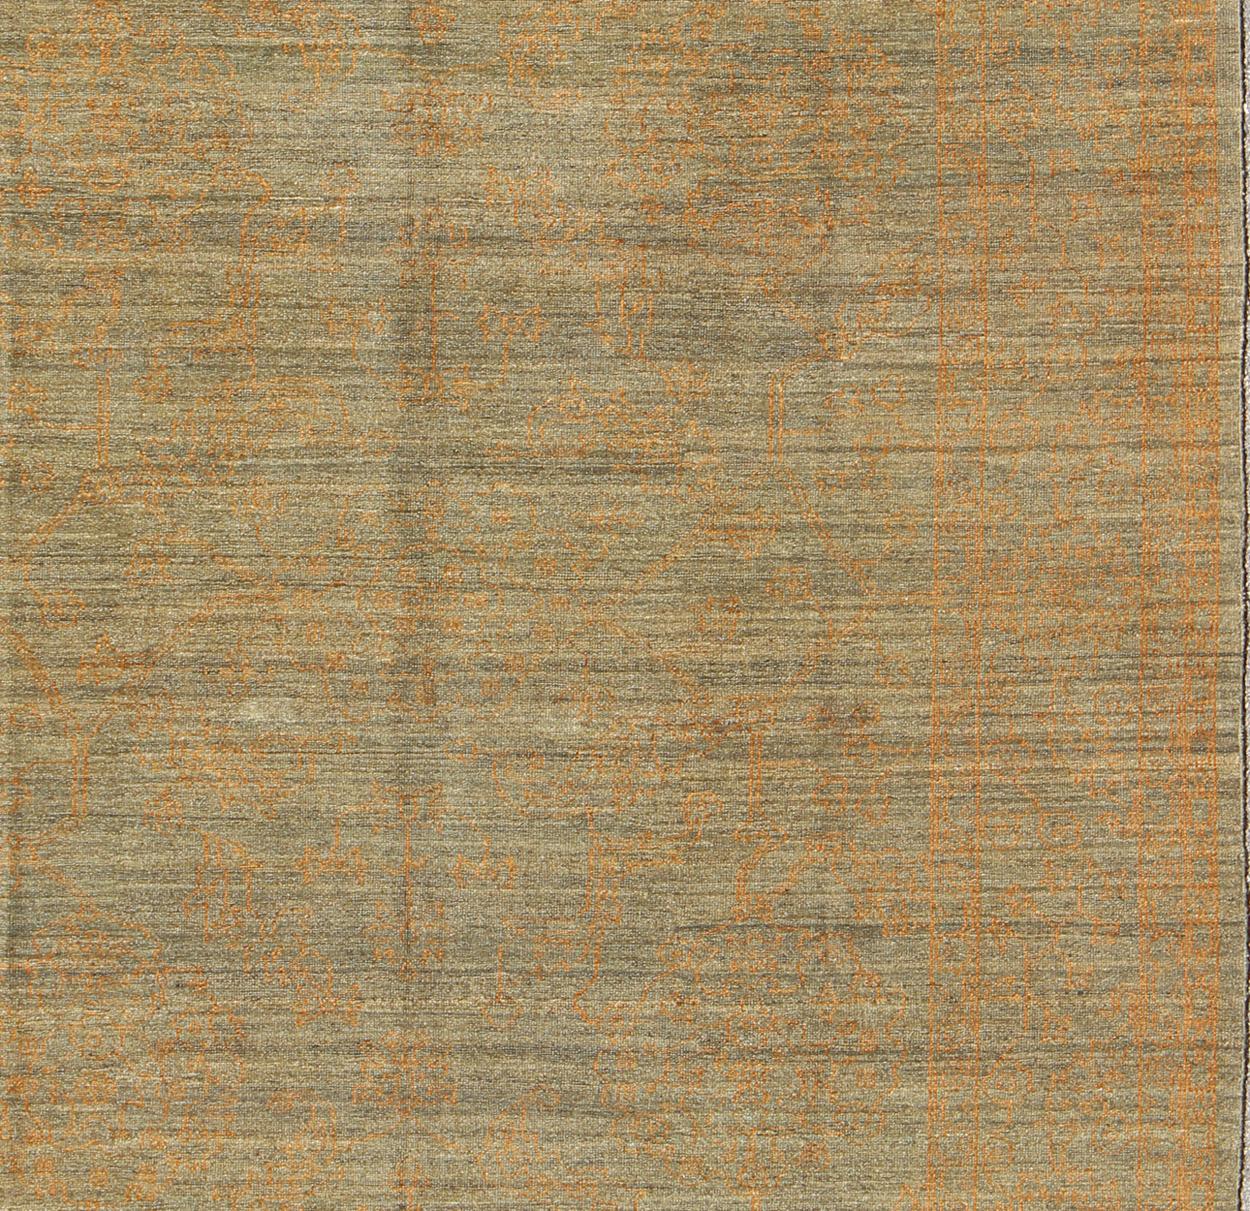 Moderner Teppich im Transitional Design. Keivan Woven Arts Teppich AN-113353 , Herkunftsland / Art: Türkei / Modern, ca. Anfang 21. Jahrhundert.
Maße: 8'3 x 10'0.
Dieser fein handgeknüpfte Teppich im Übergangsdesign zeichnet sich durch ein